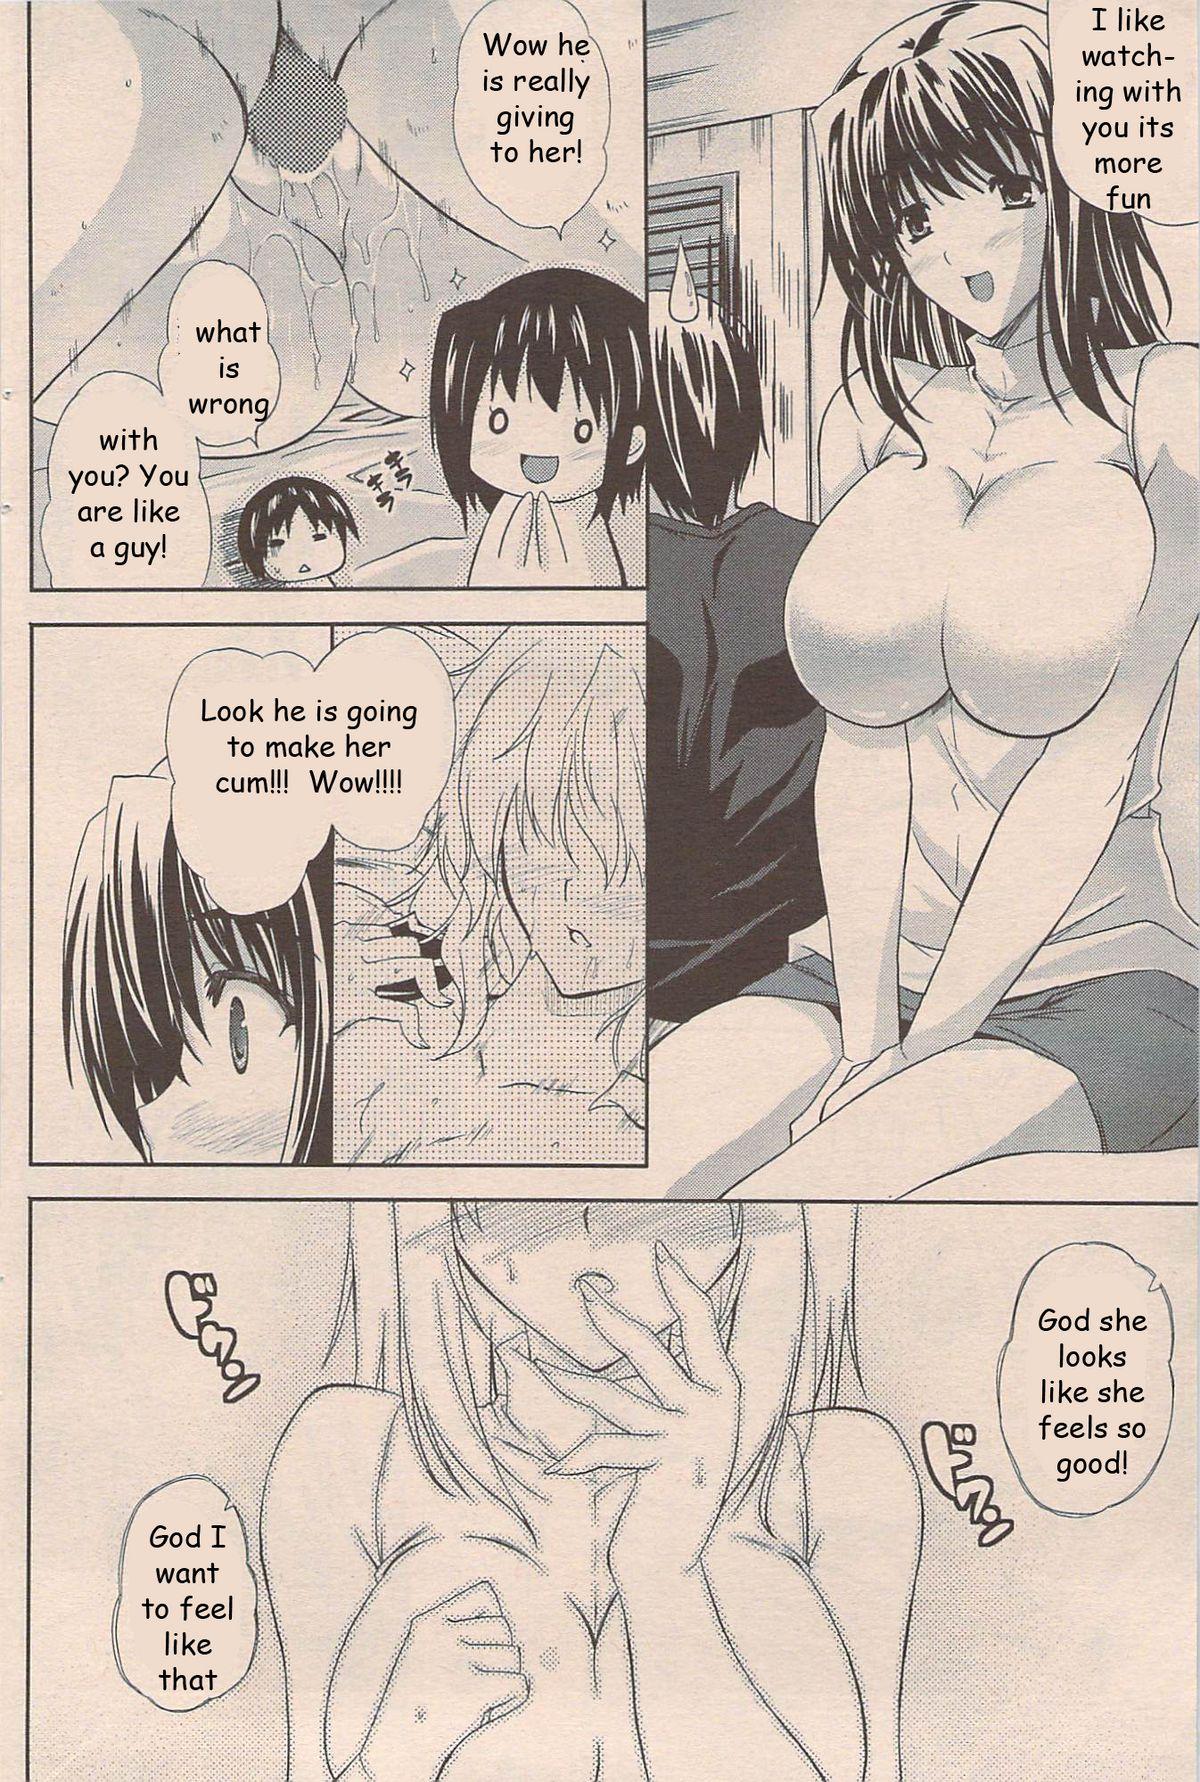 Perverted Sister Page 4 Of 16 rewrite hentai manga, Perverted Sister Page 4...